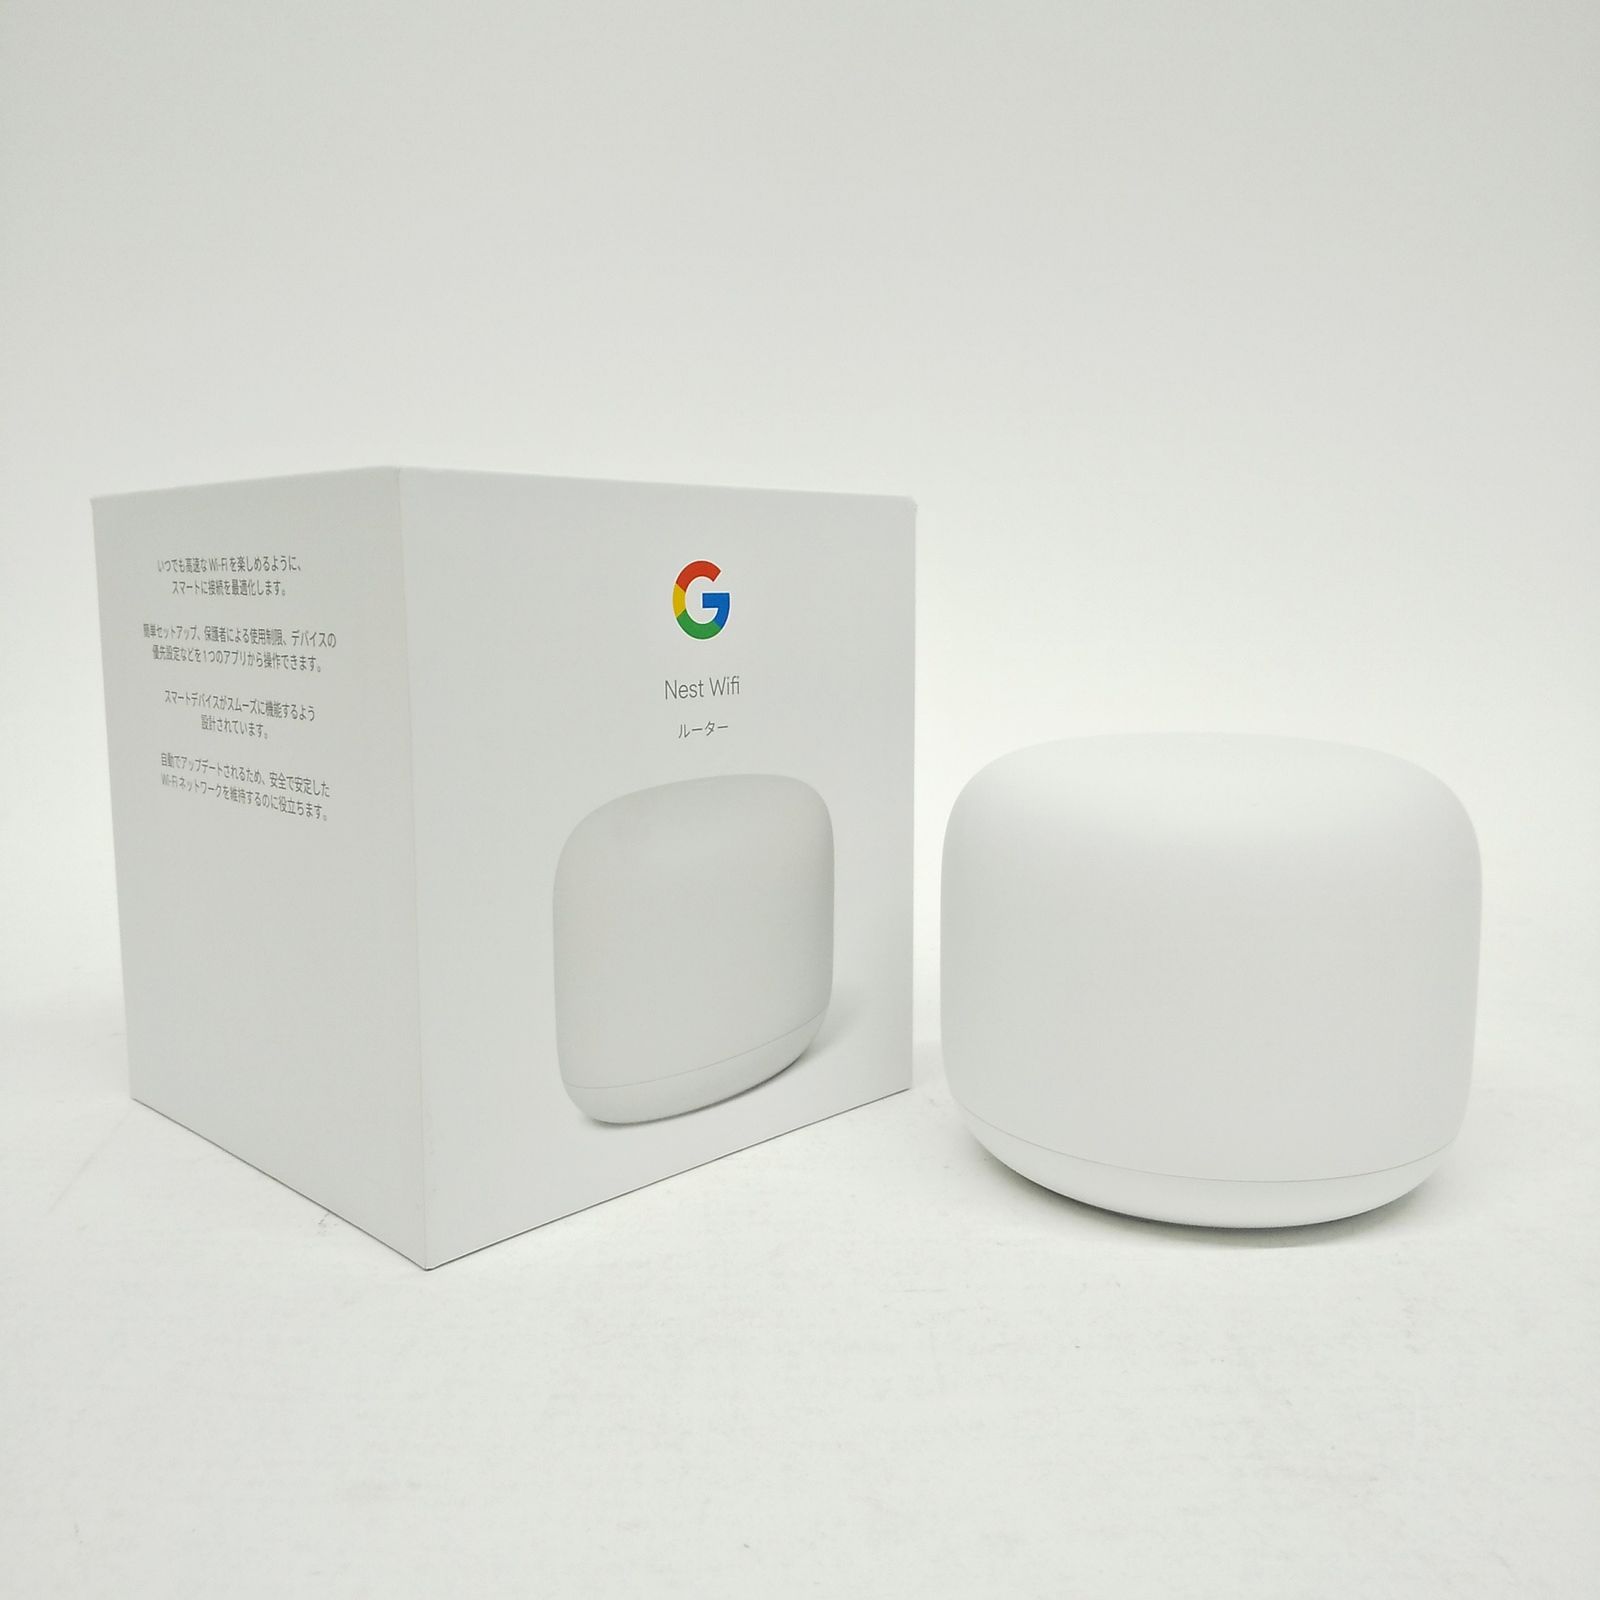 Google Nest Wifi ルーター GA00595-JP メッシュネットワーク対応